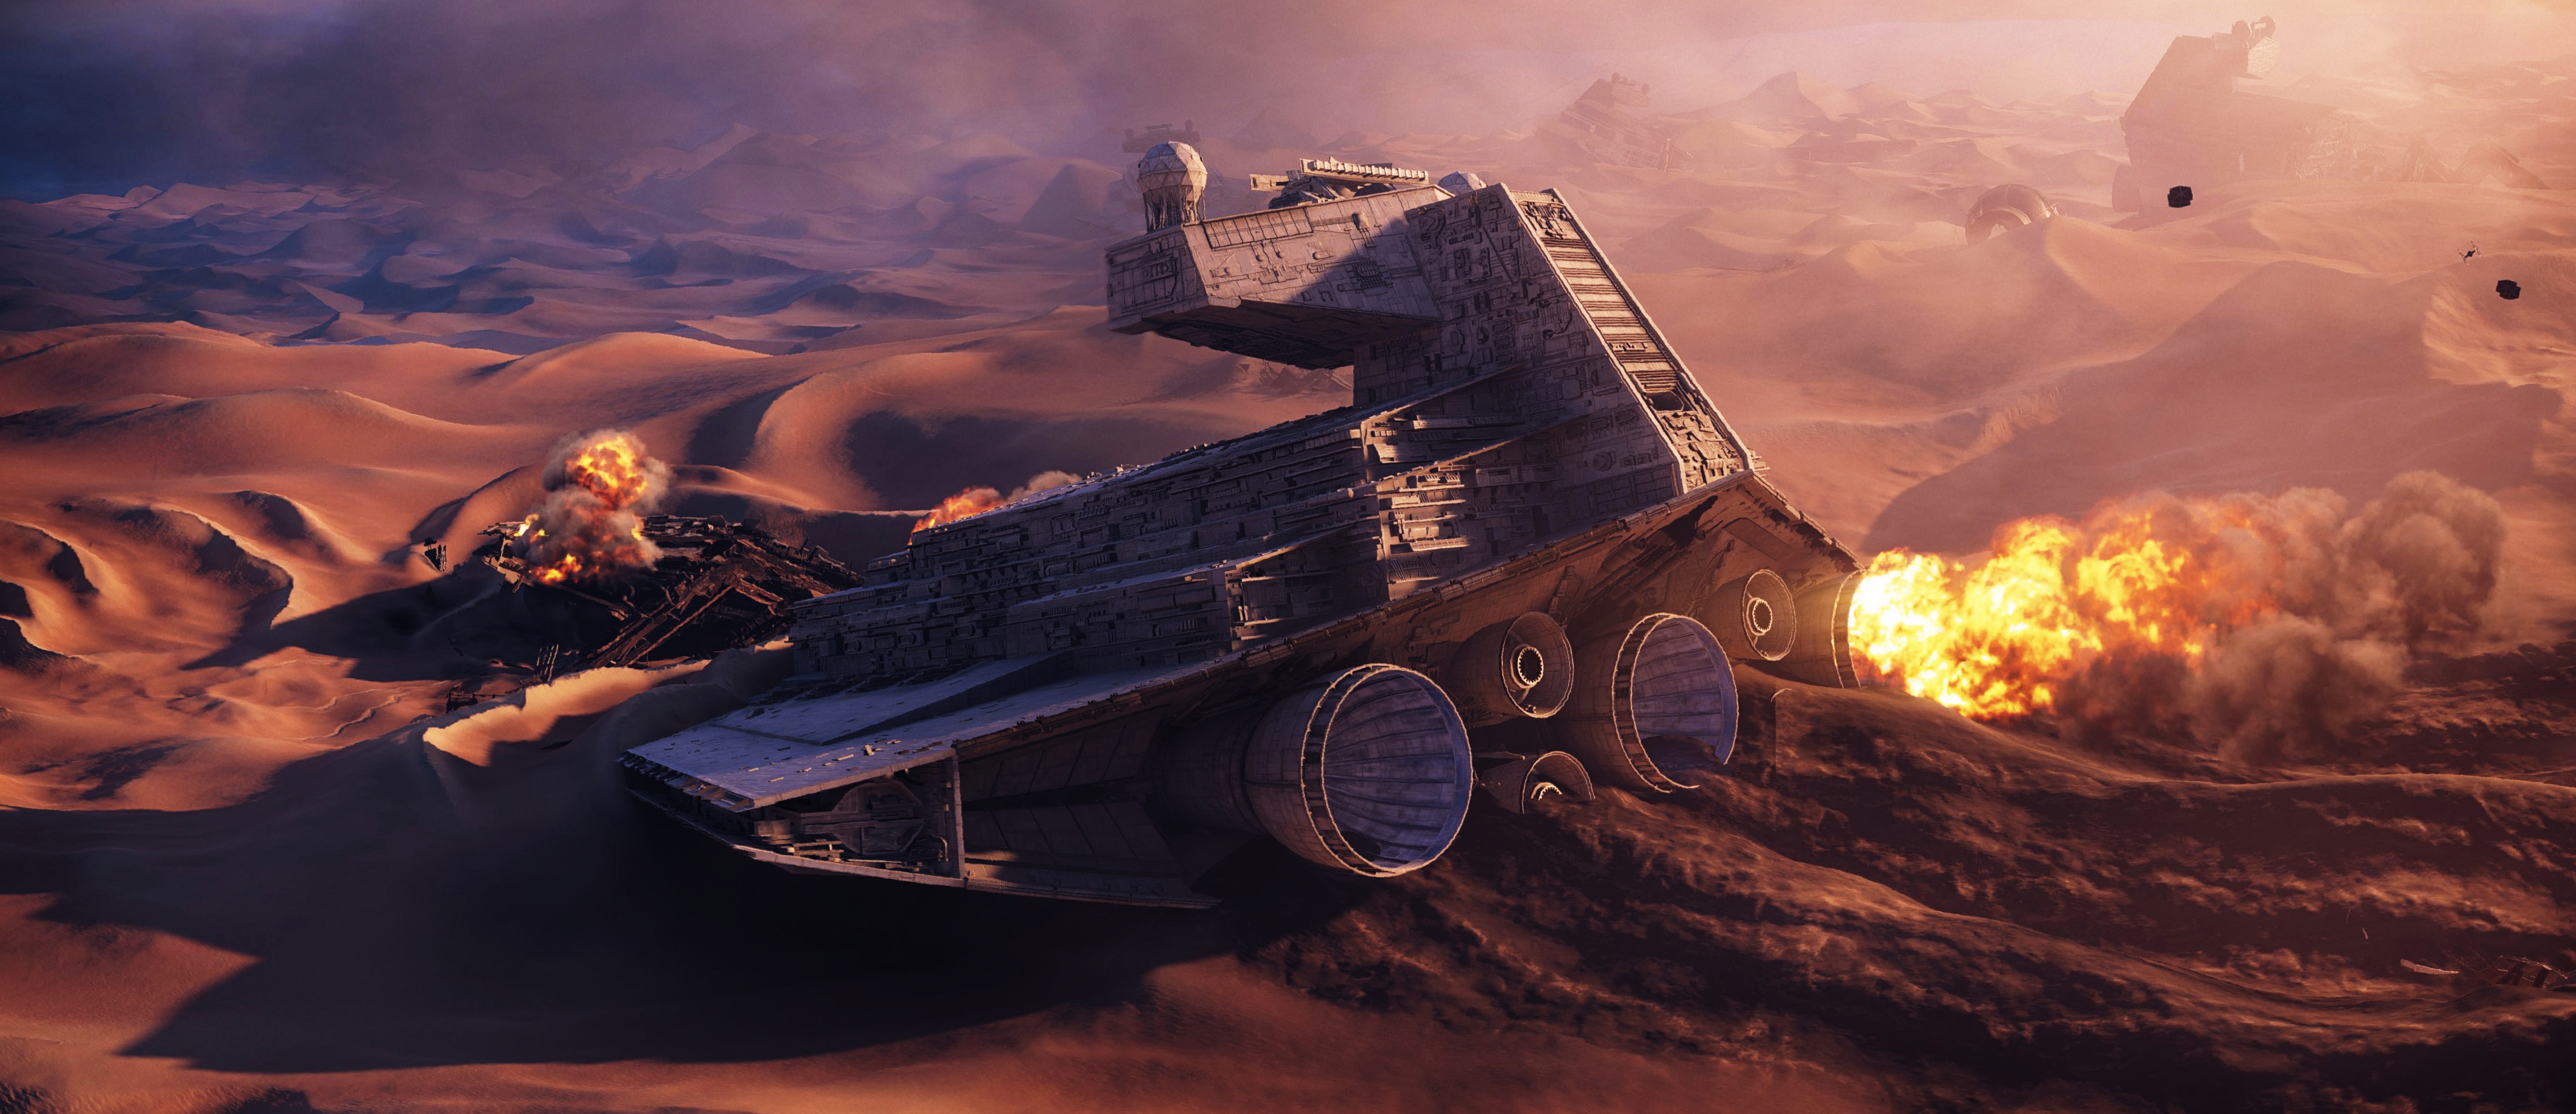 General 4800x2075 Star Wars Star Destroyer sand desert crash Star Wars Ships wreck Imperial Forces digital art TIE Fighter